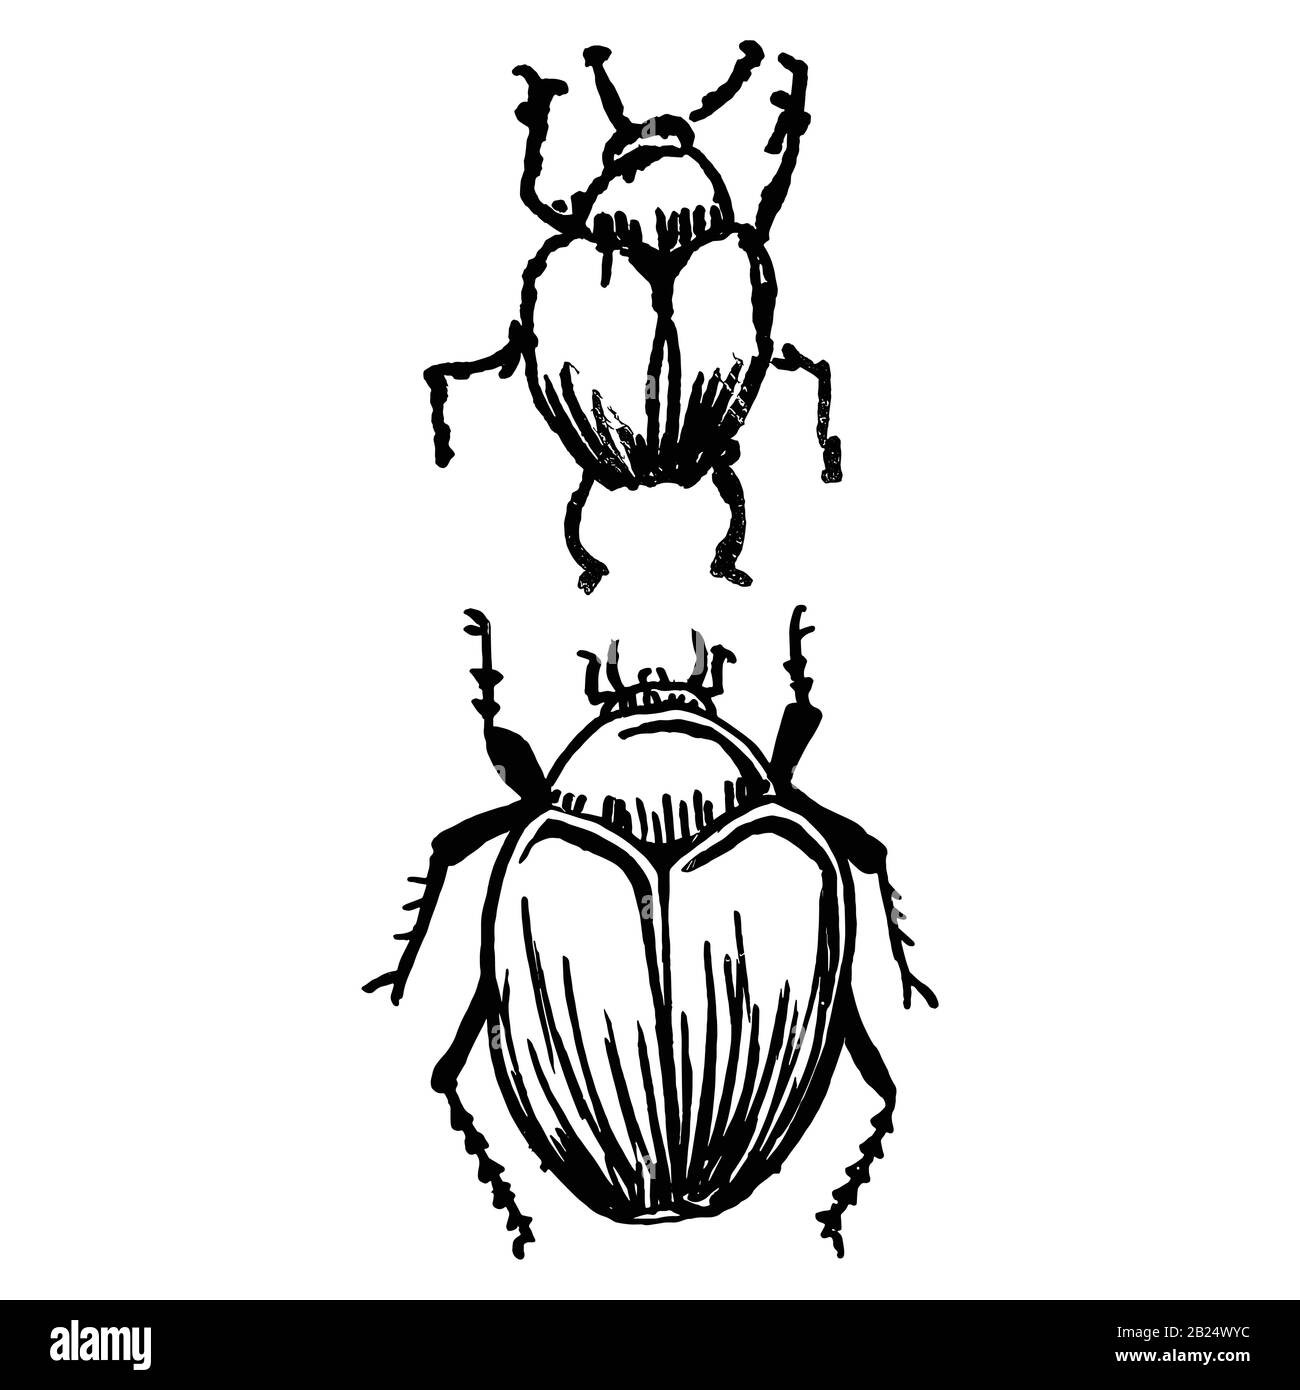 Mignonne bande dessinée deux clipart vecteur de coléoptères géants de fruits. Insecte nuisible pour le jardin. Caniche naive d'arthropodes d'insectes biologiques ailés. Doodle de la faune de la cour Illustration de Vecteur